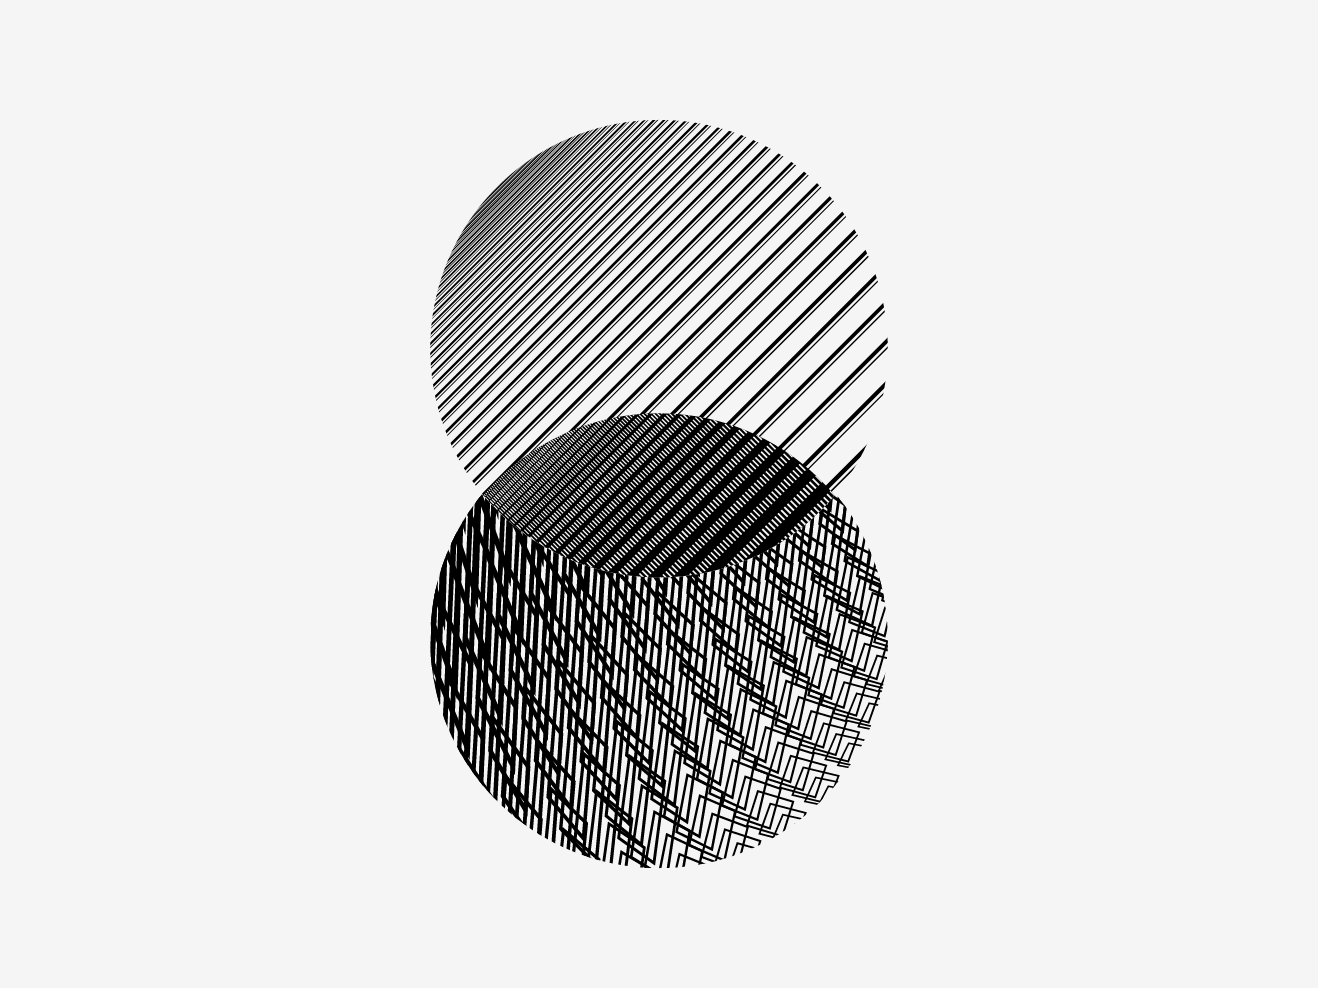 Illustration zum Tag der Forschung 2023: Ineinandergreifende gemusterte Kreise in schwarz/weiß